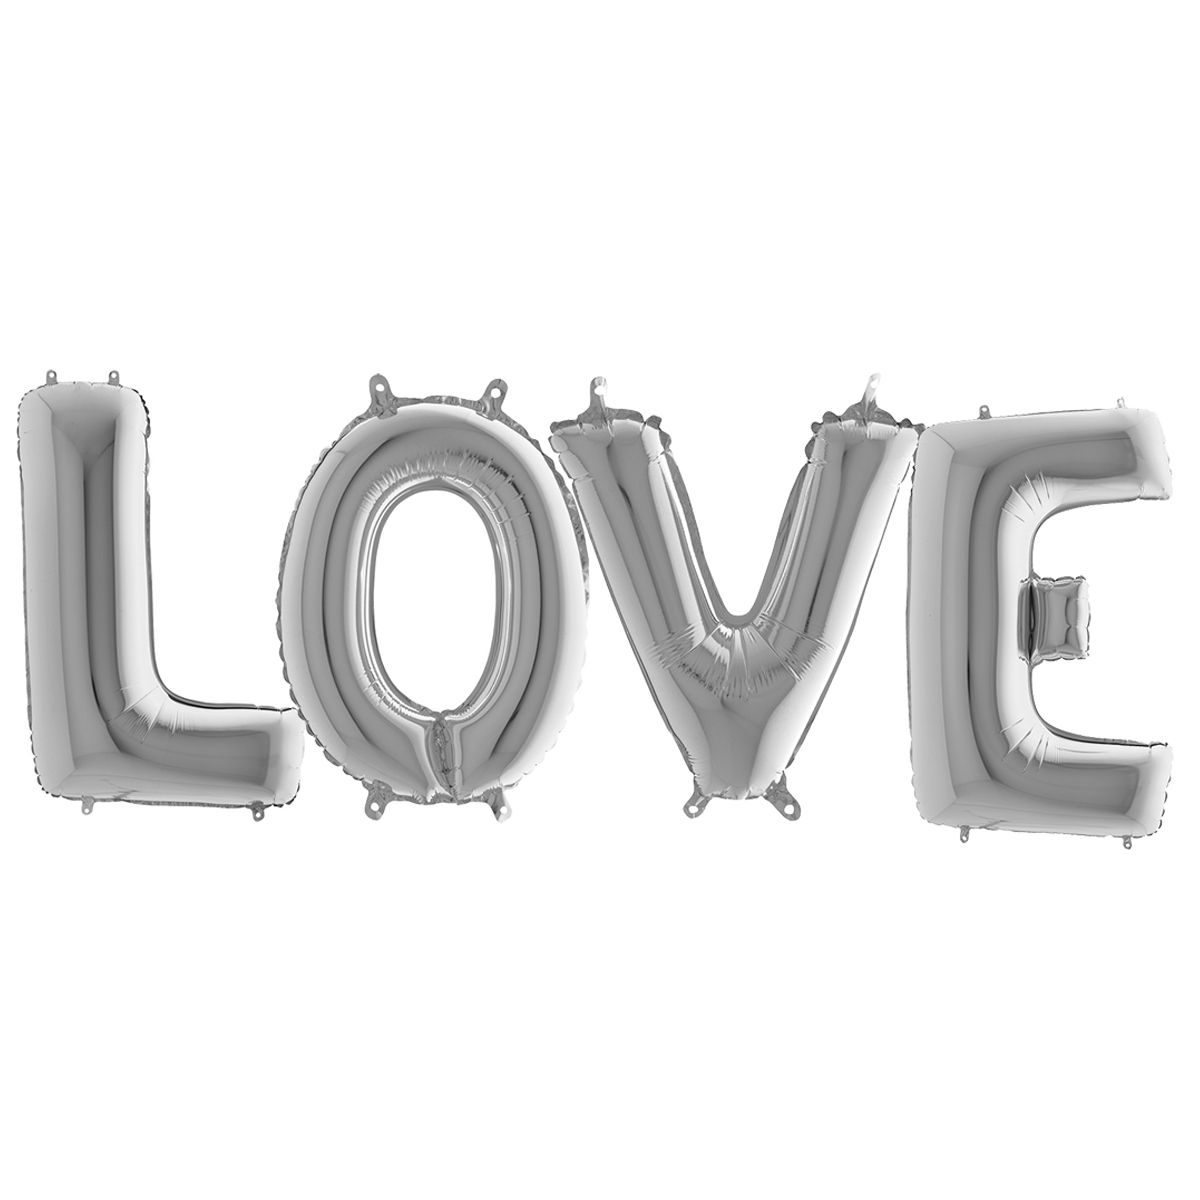 Фольгированные шары Буквы " love" серебро 100см .Надуты гелием